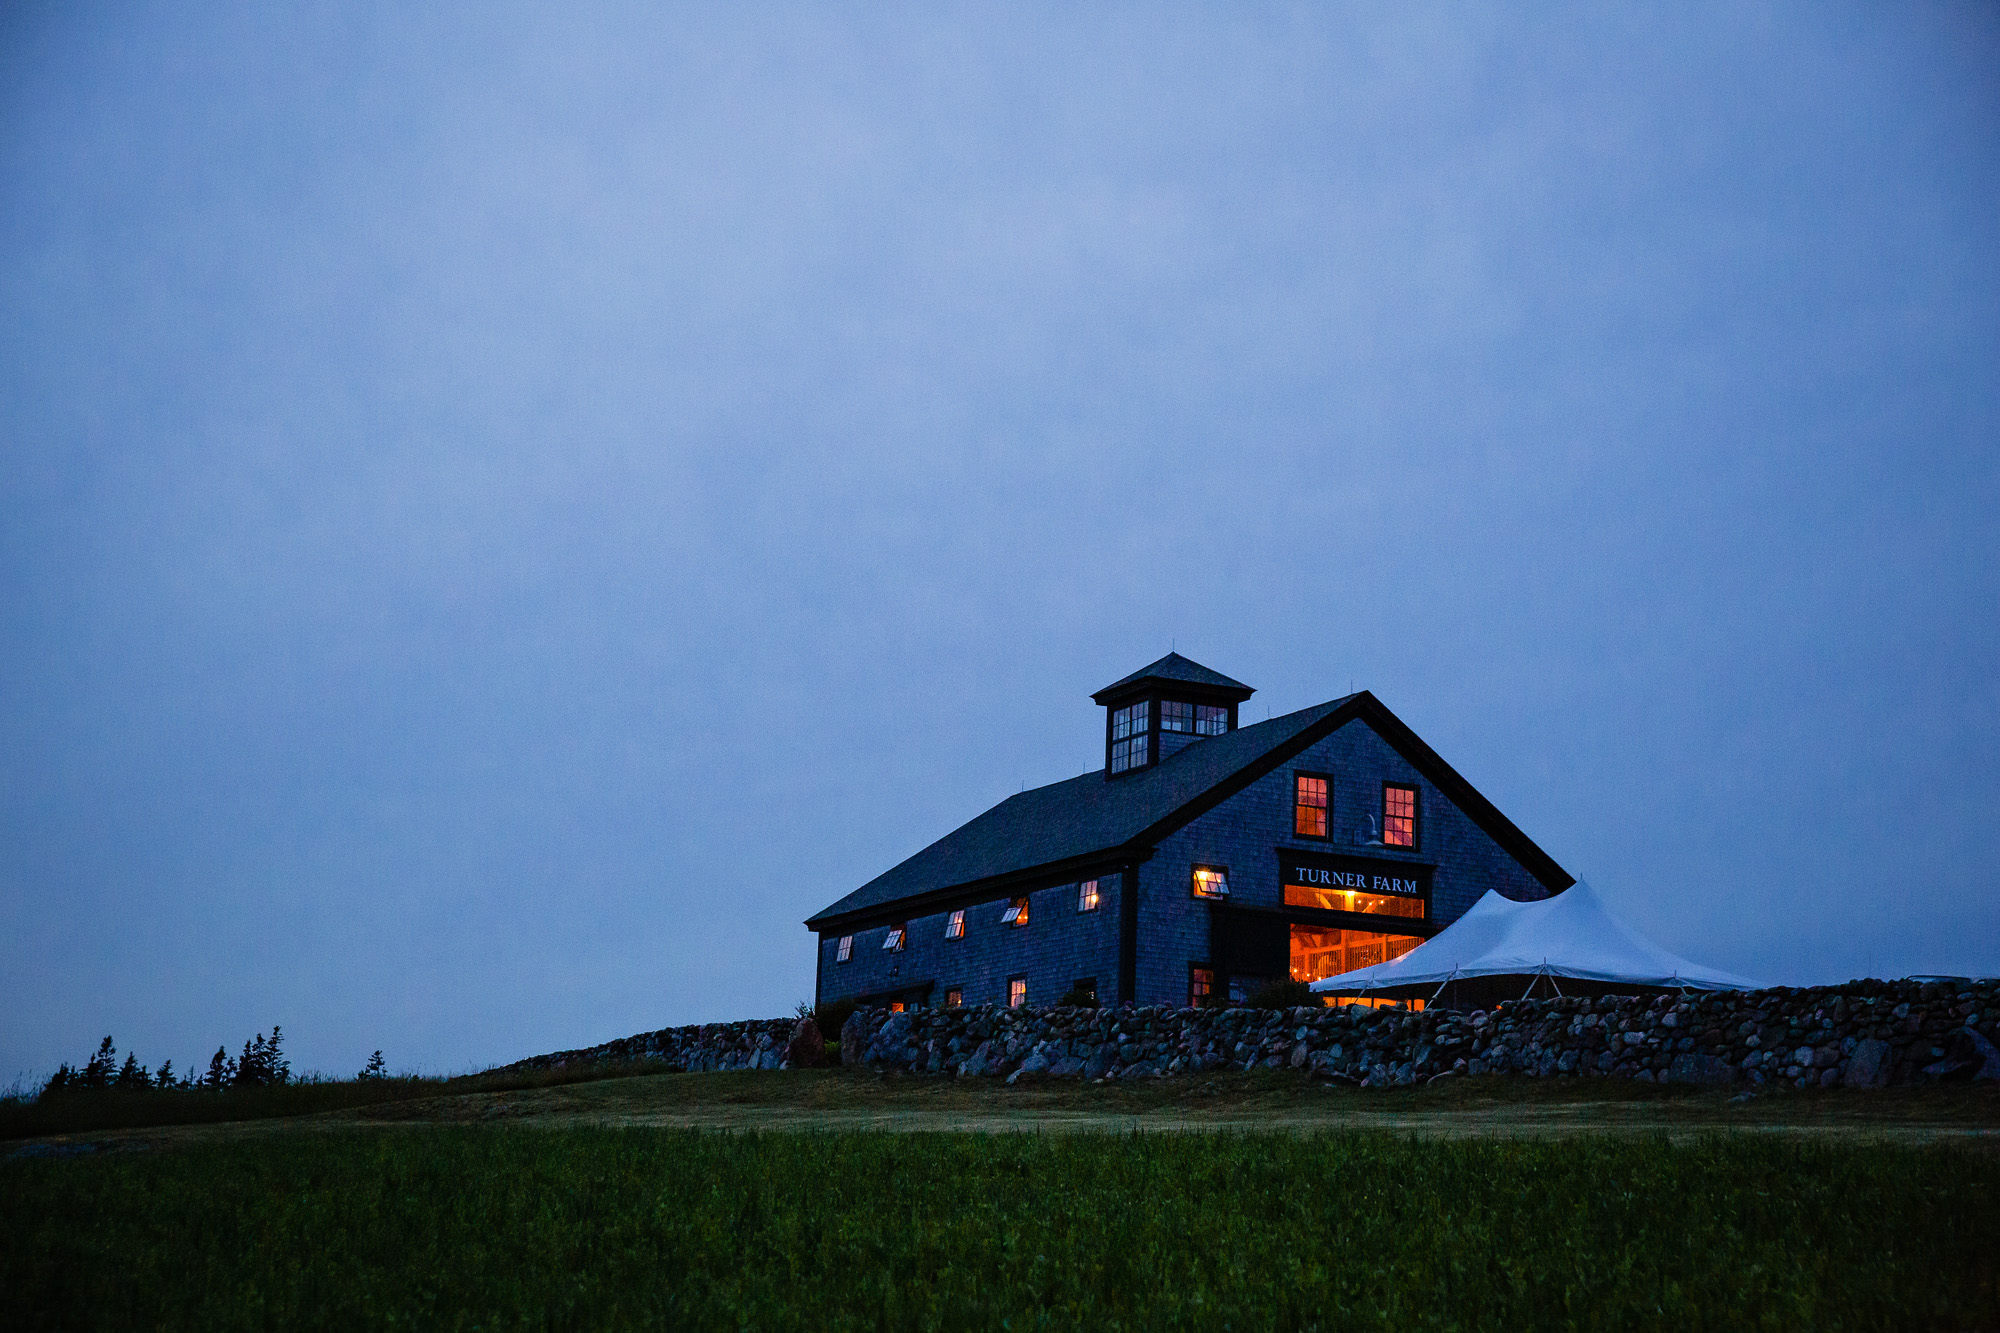 Turner Farm on North Haven Island, Maine at twilight